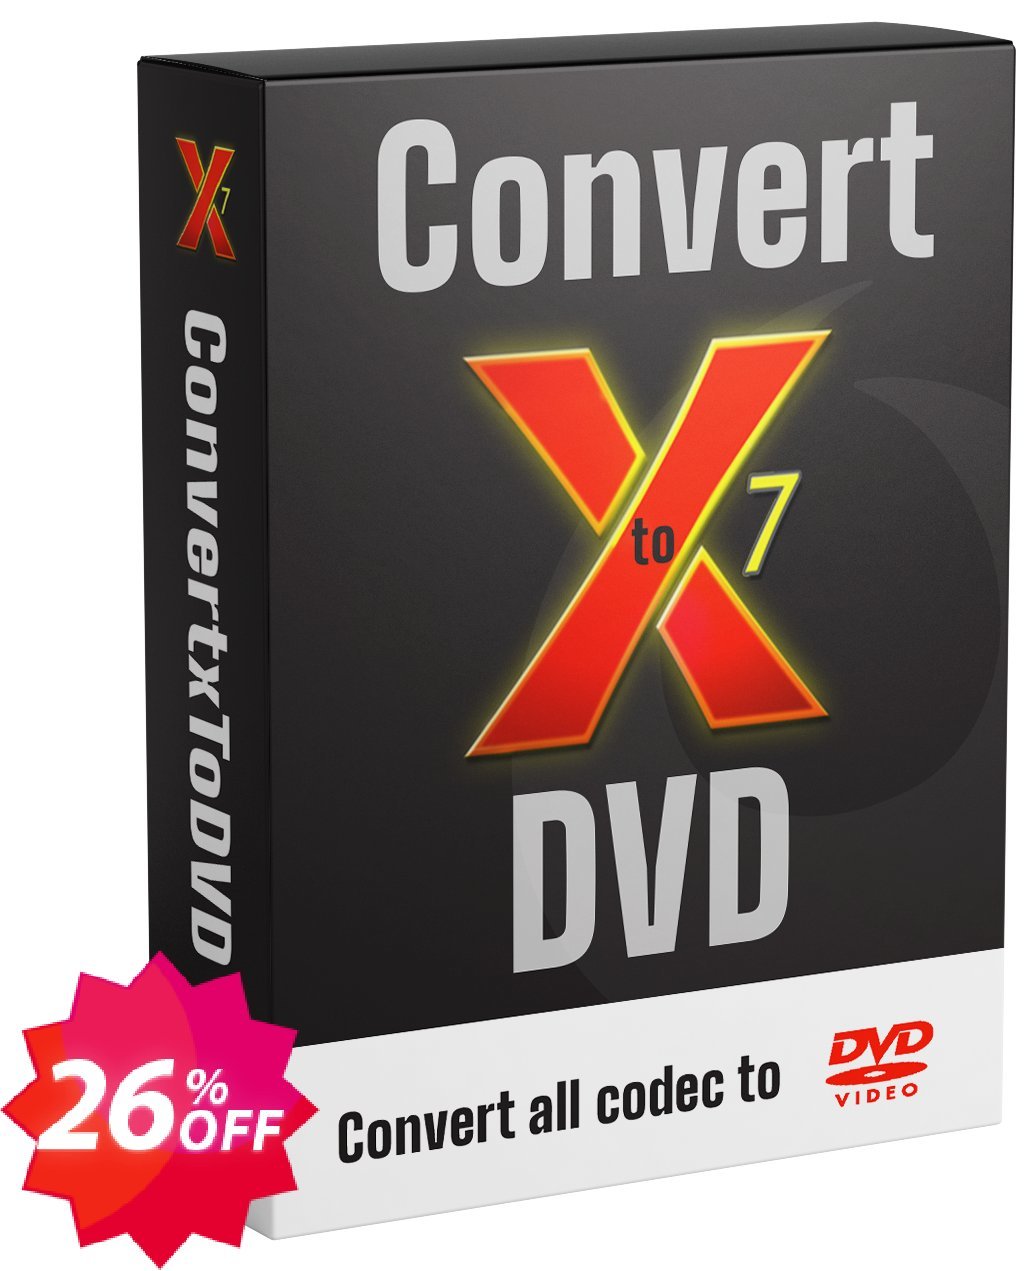 VSO ConvertXtoDVD Coupon code 26% discount 